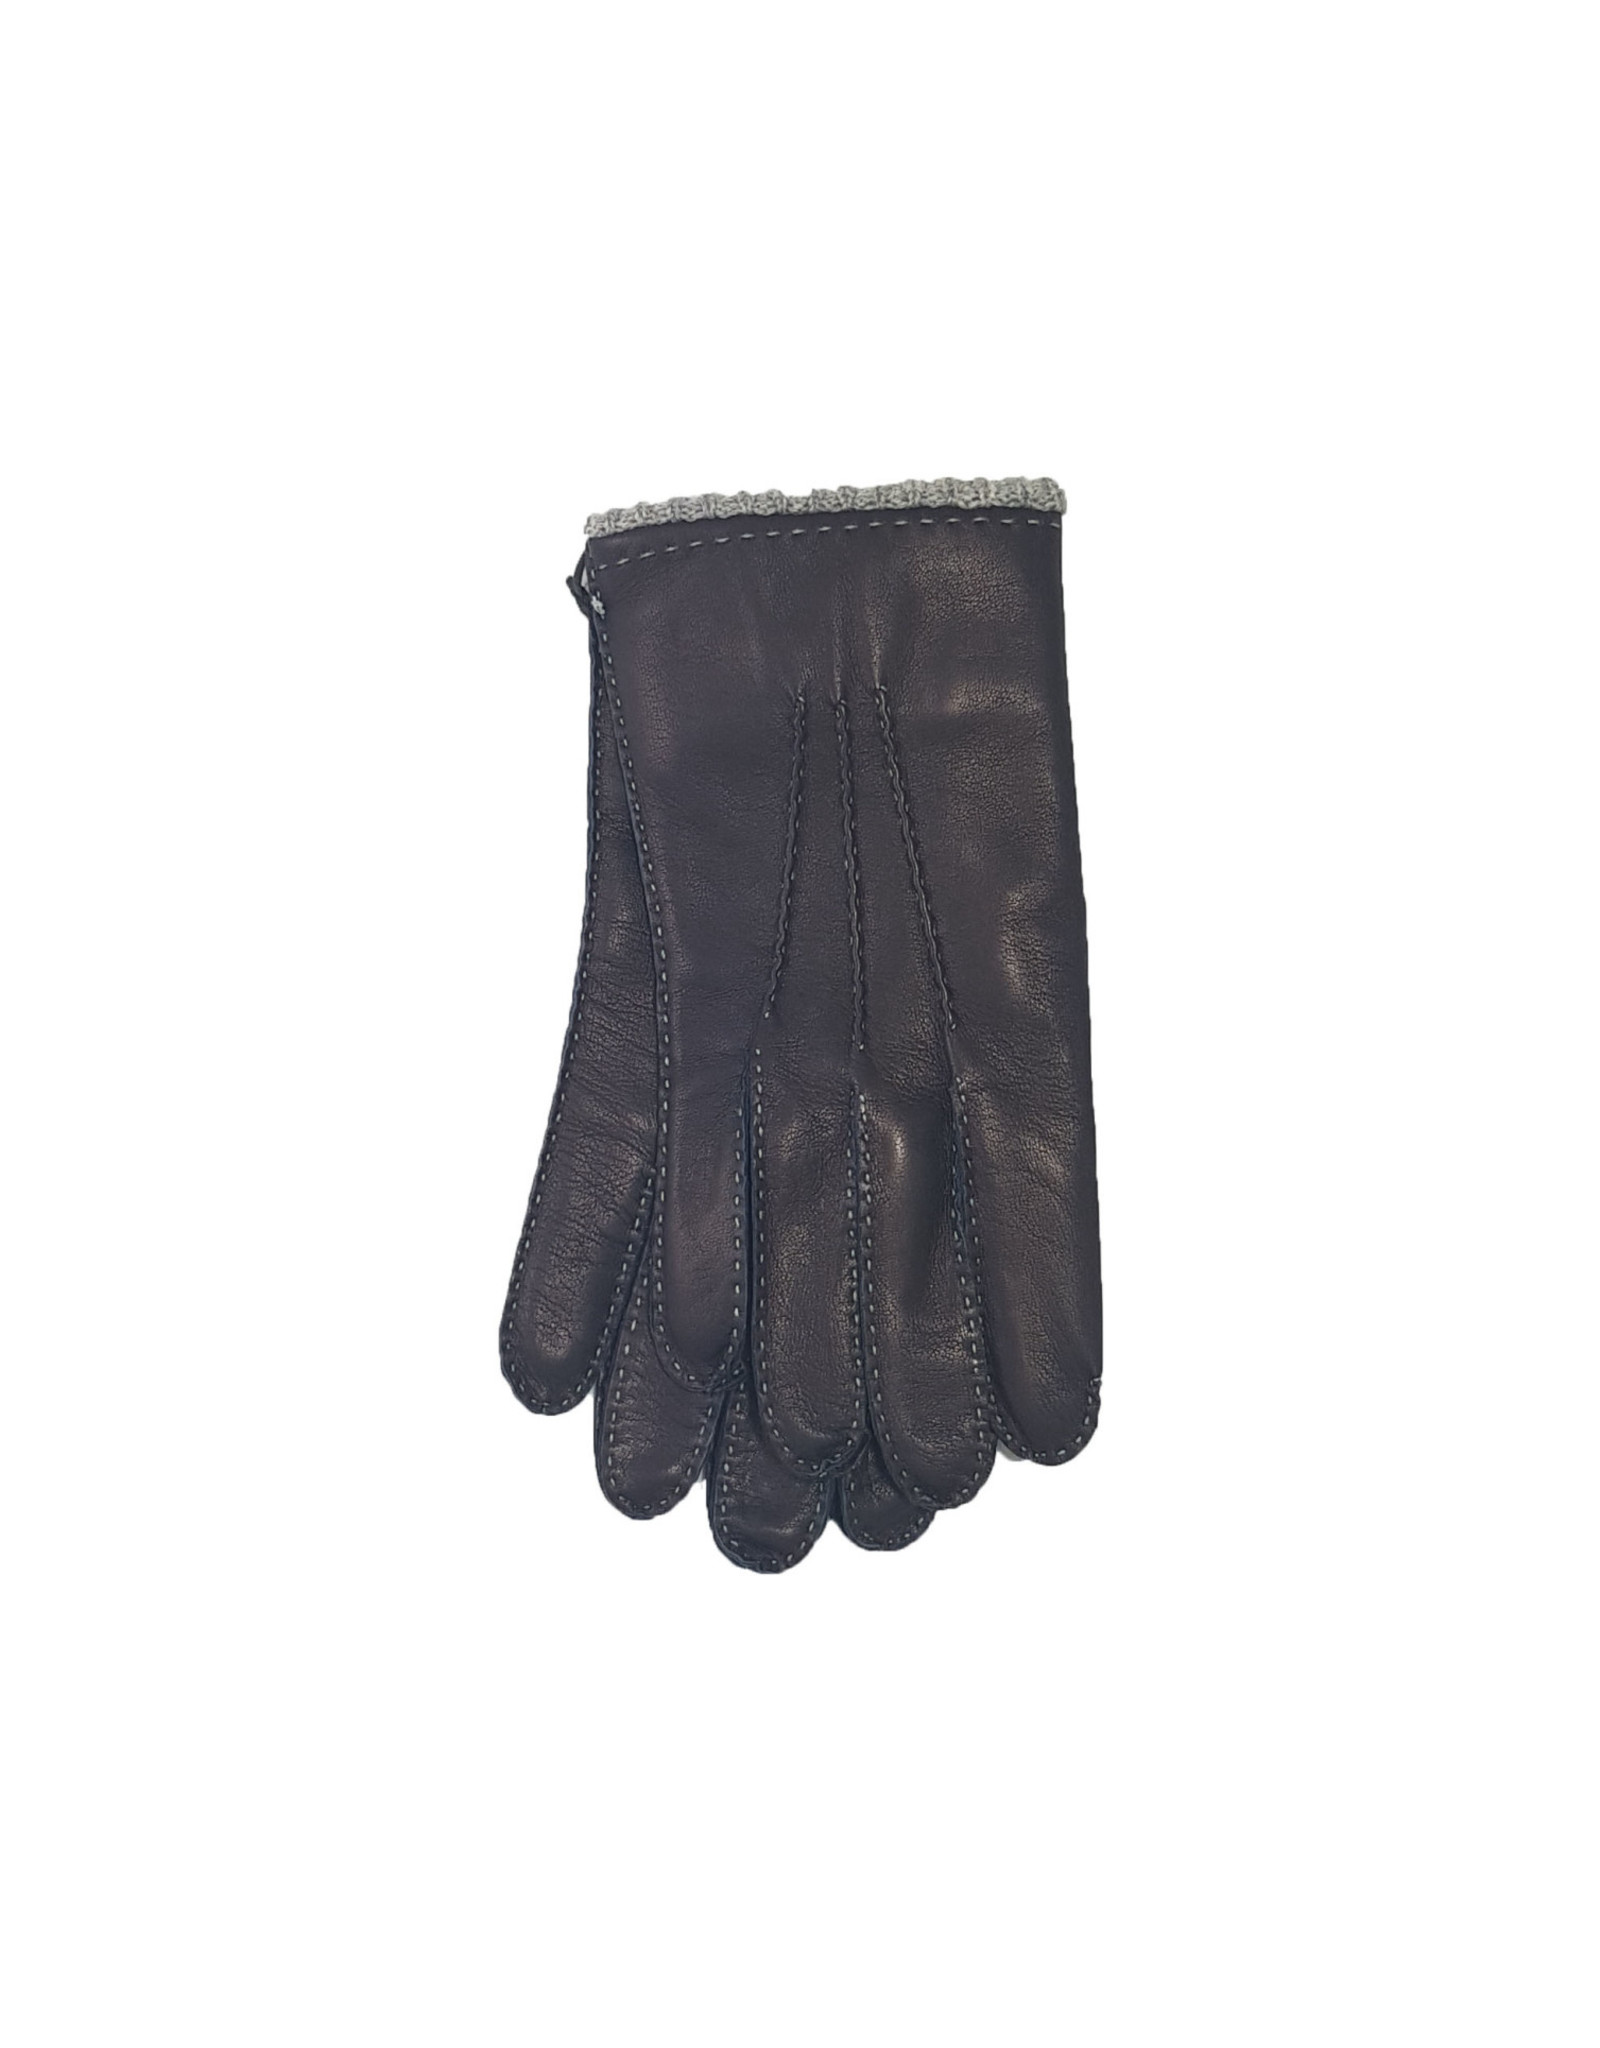 Mazzoleni Mazzoleni gloves leather blue